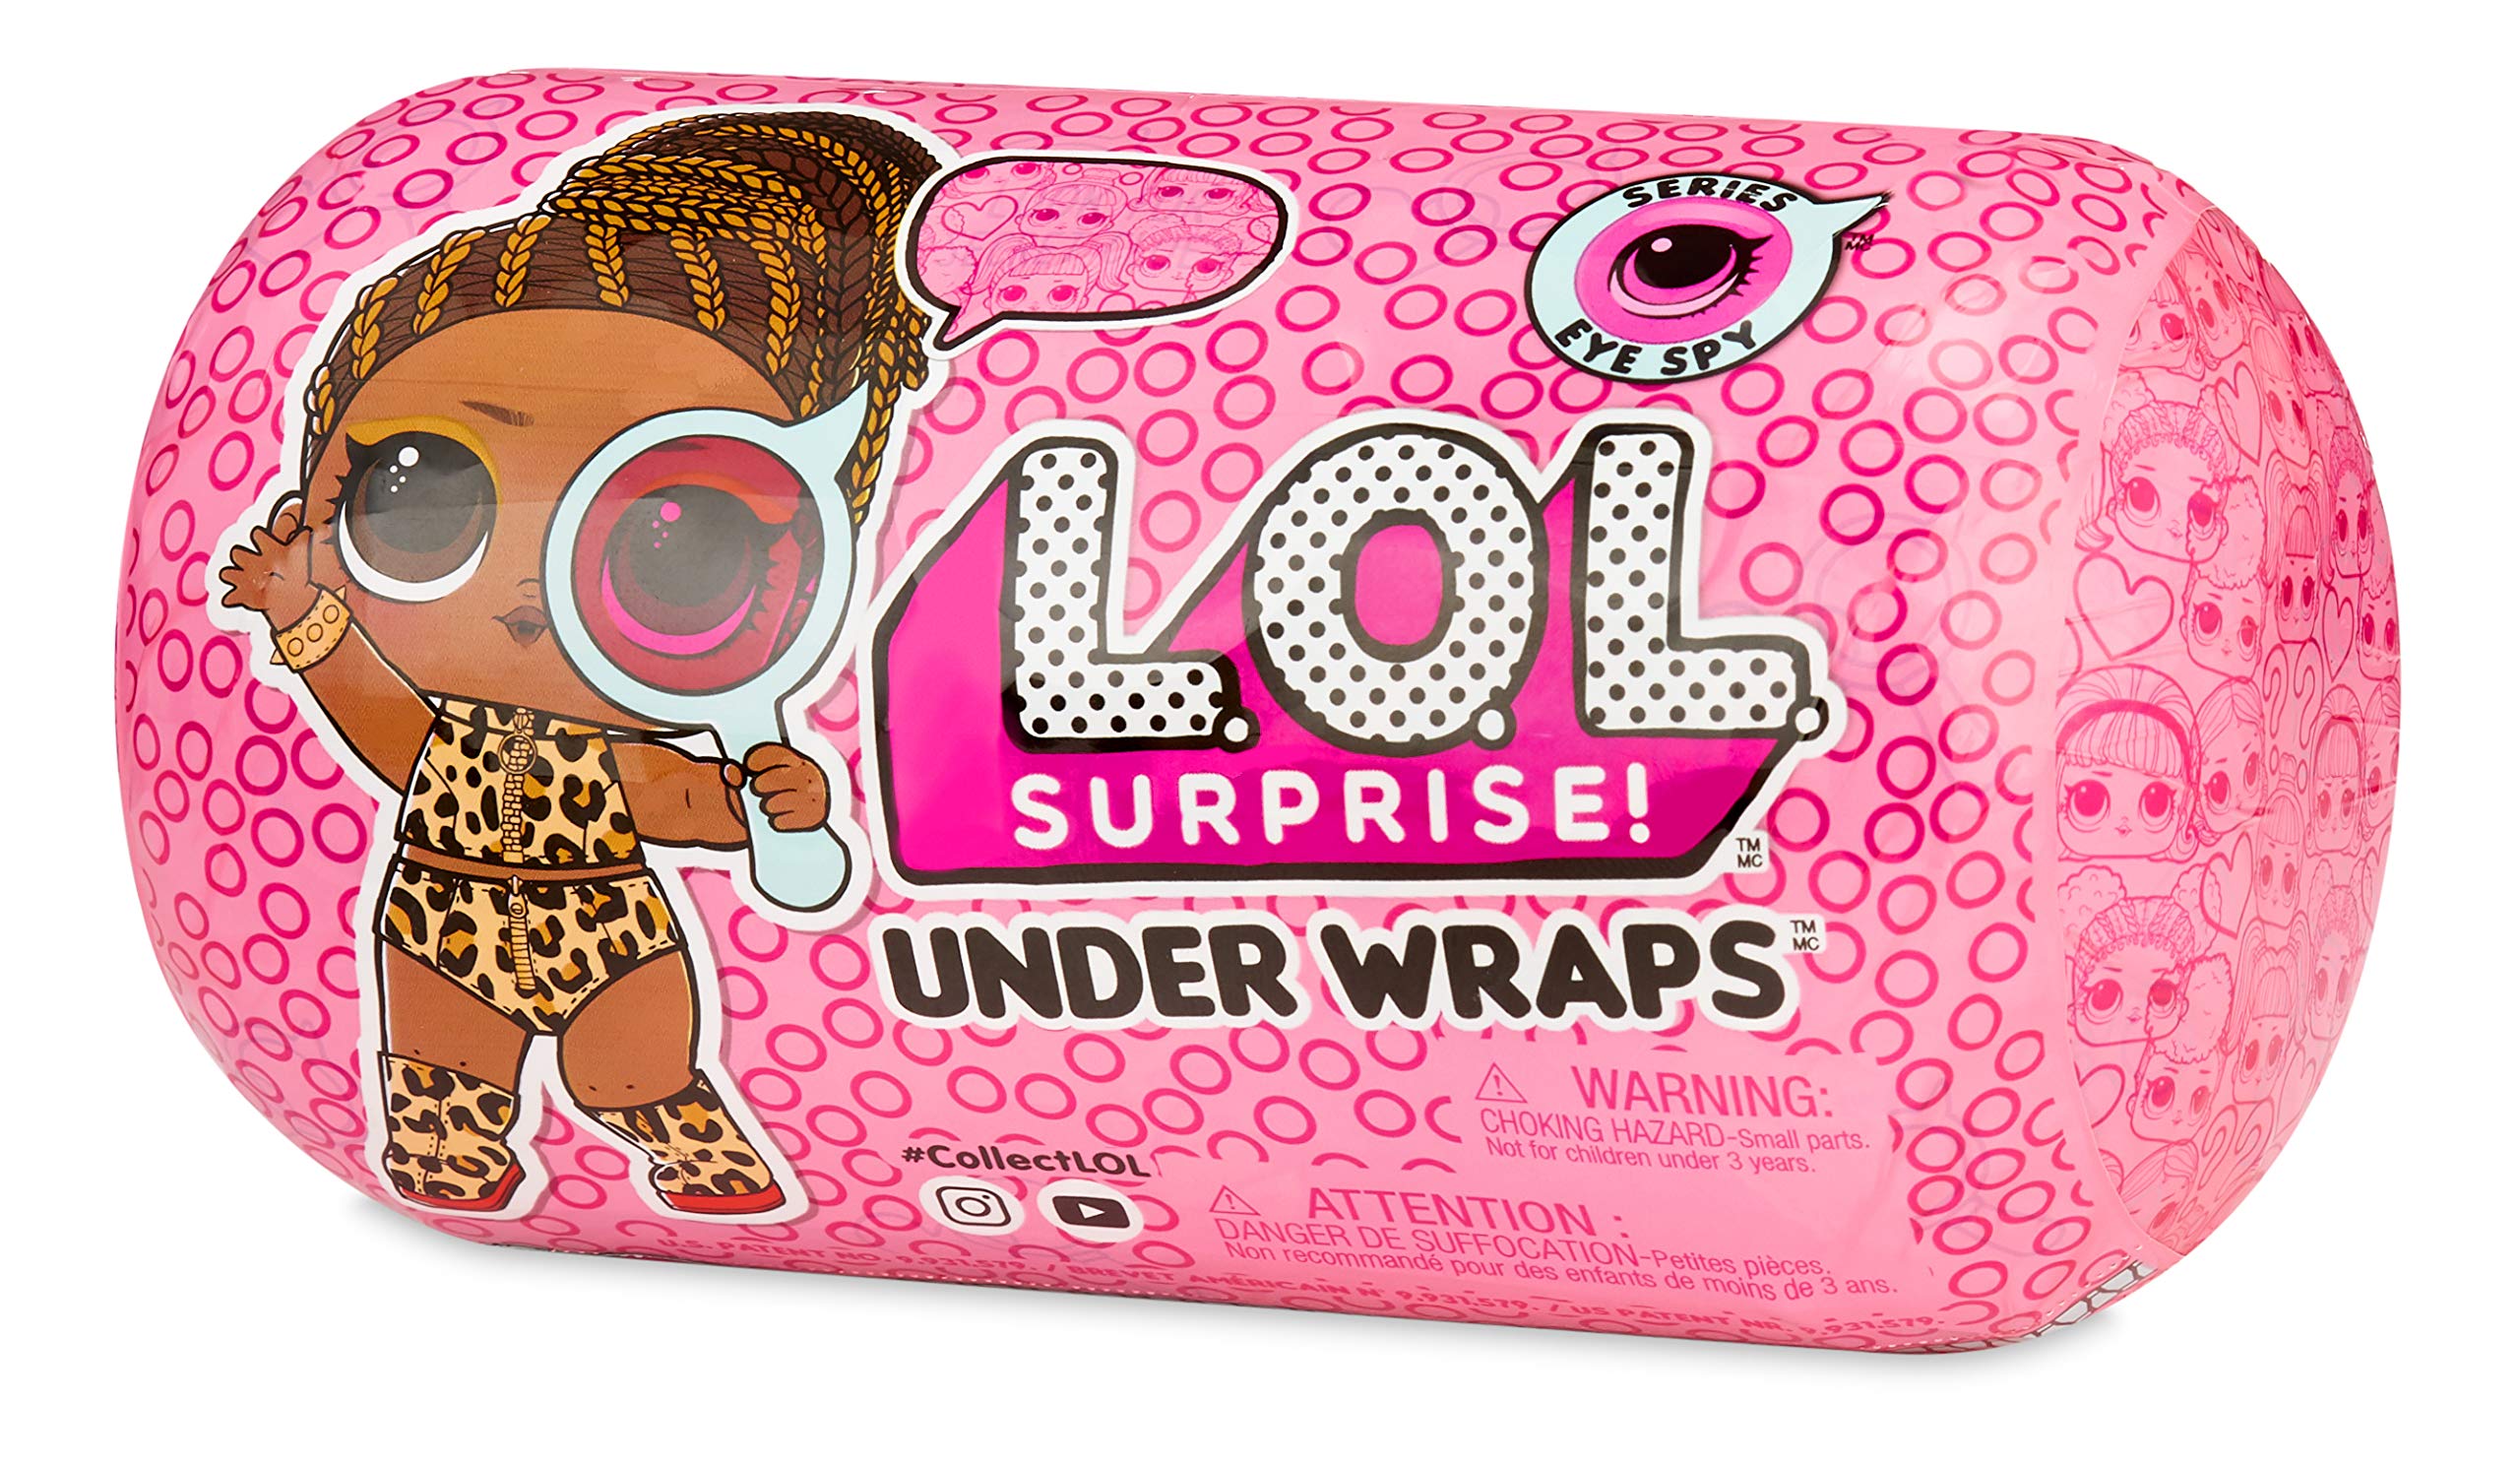 L.O.L. Surprise! Under Wraps Doll- Series Eye Spy 2A